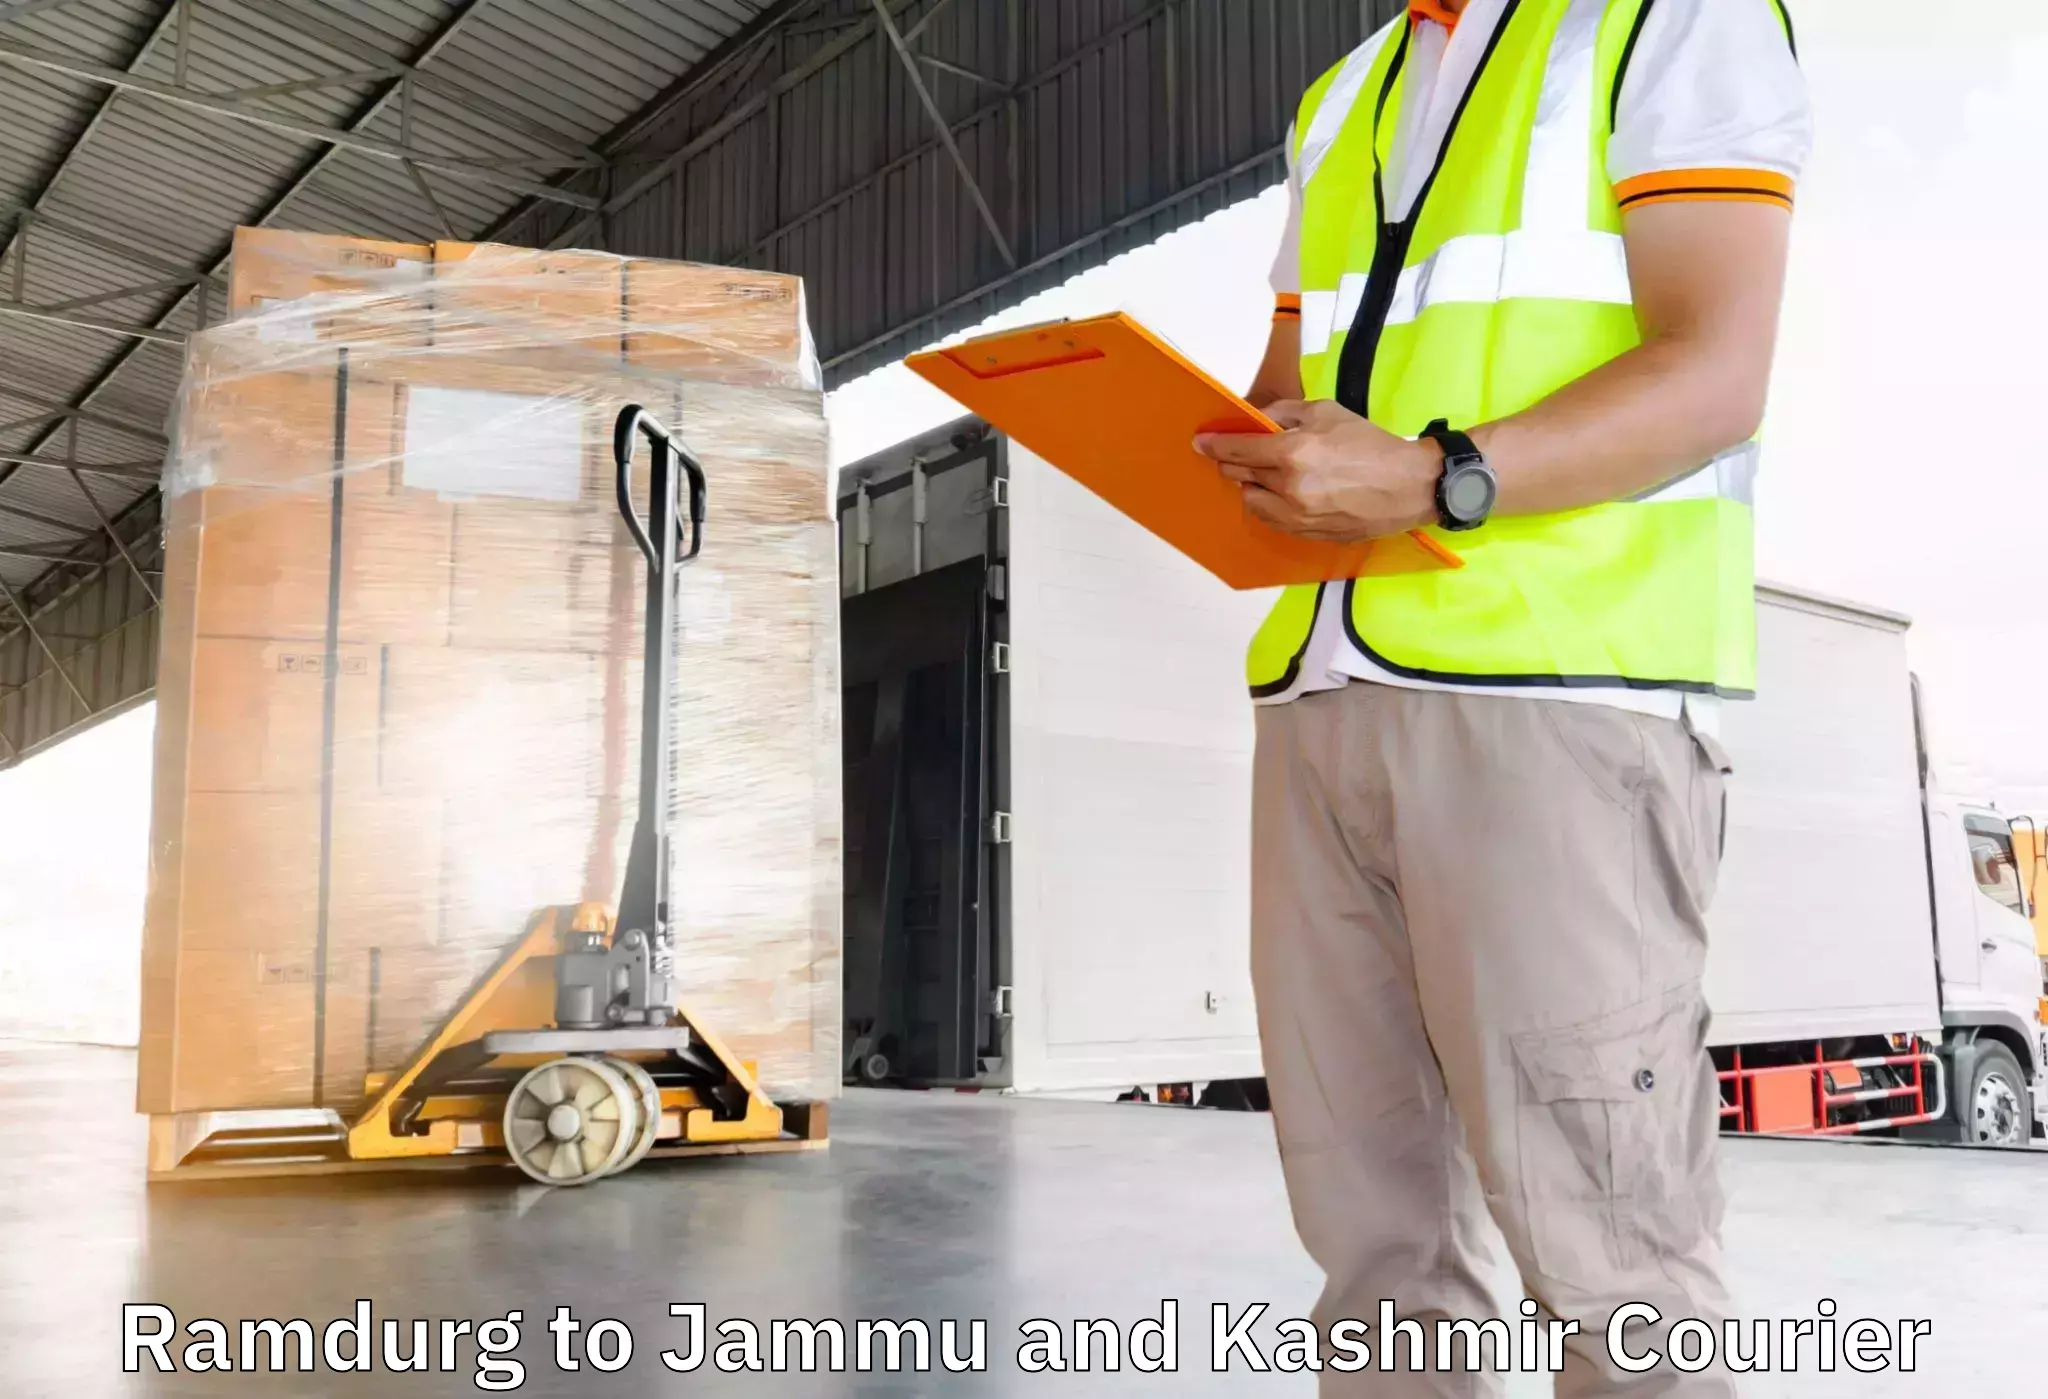 Furniture transport company Ramdurg to Jammu